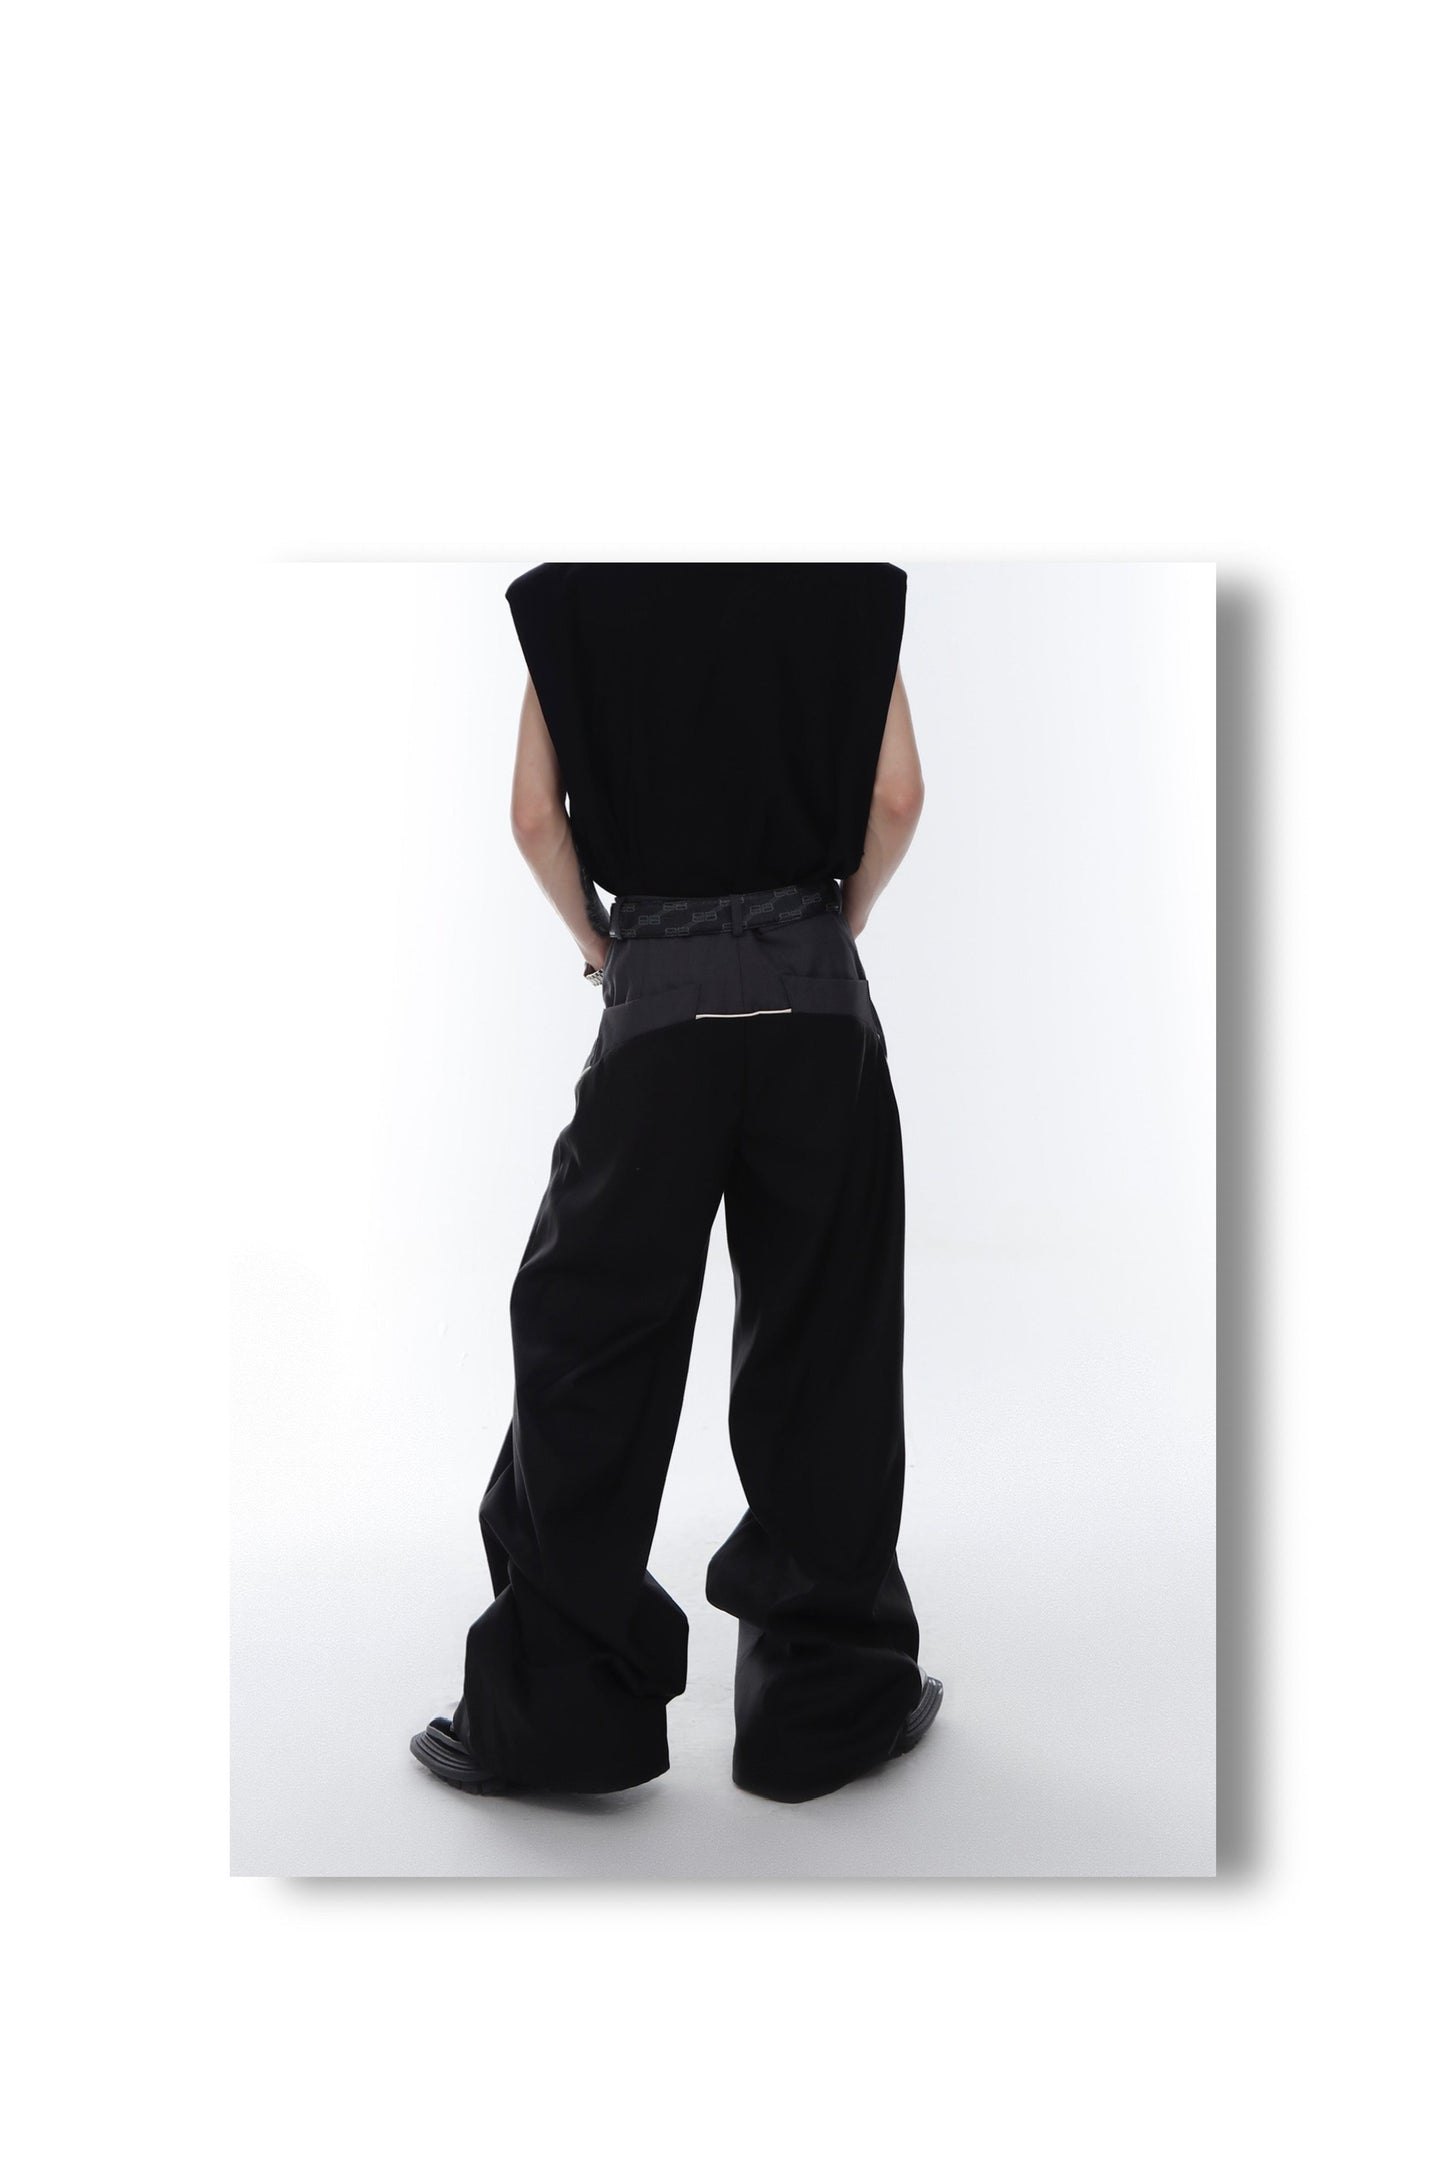 Loose Spliced Drape Pants | ARGUE CULTURE Collection [H358]